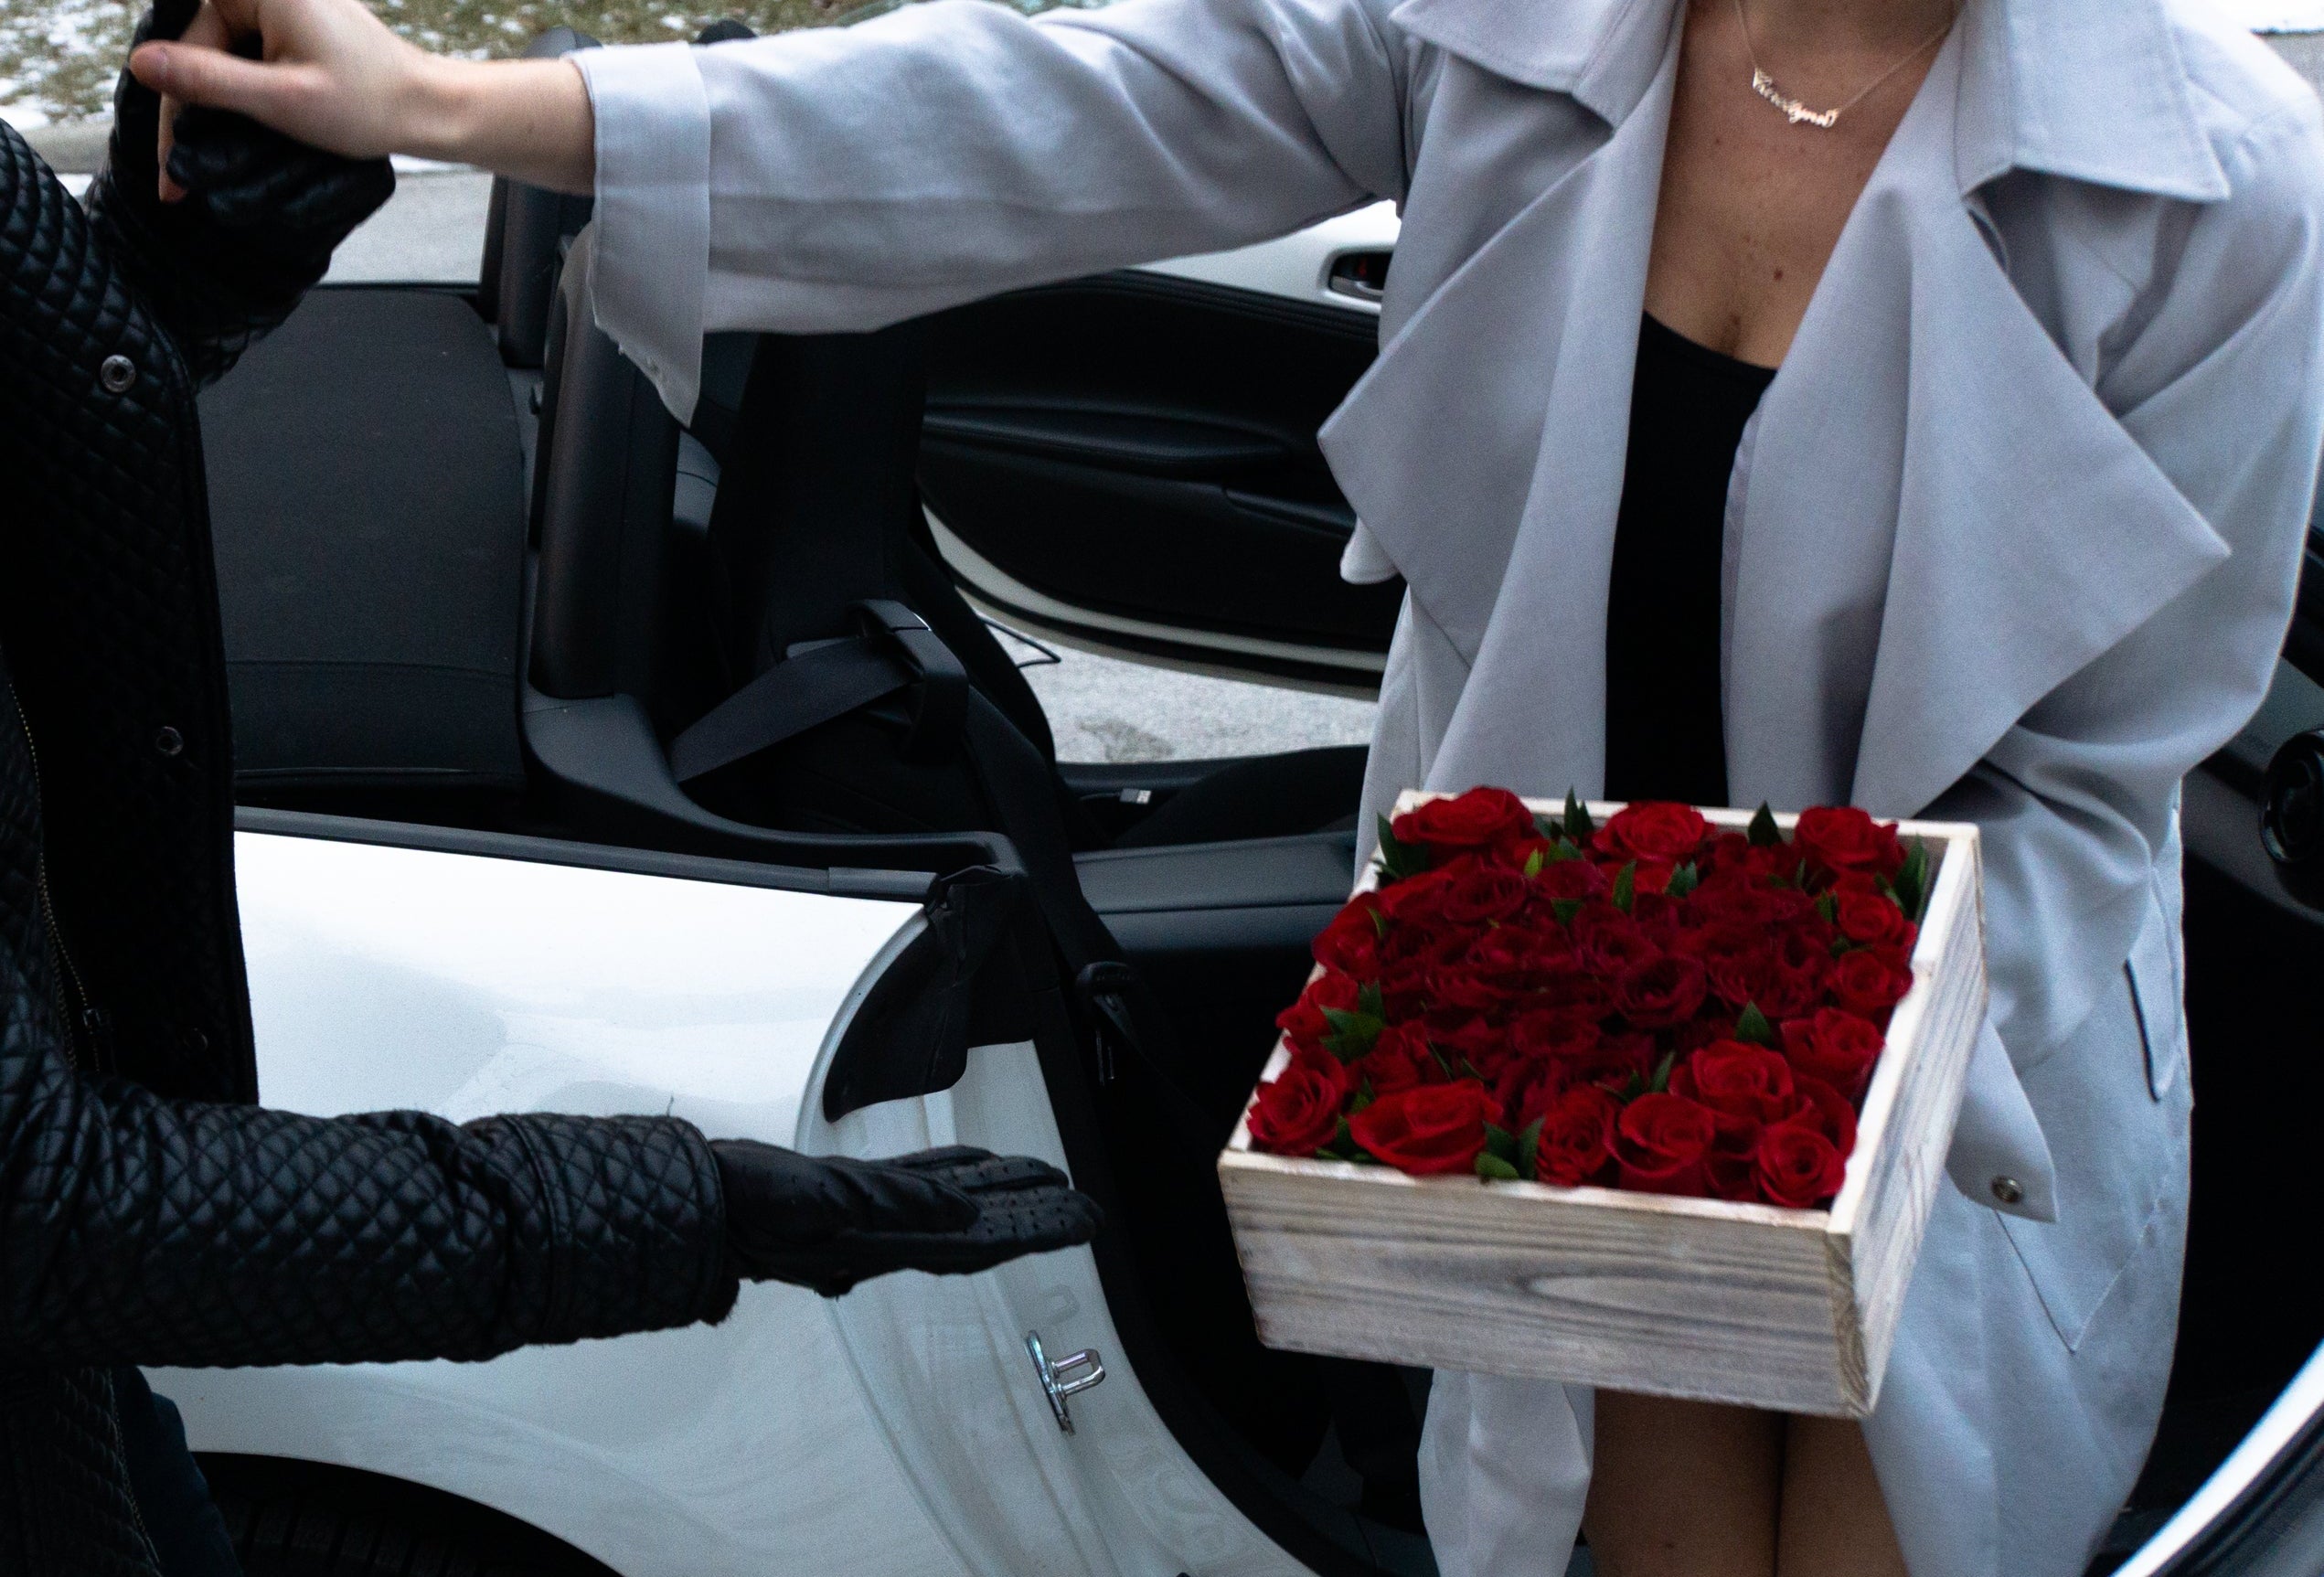 Wear Your Heart in a Box - Immanuel Florist